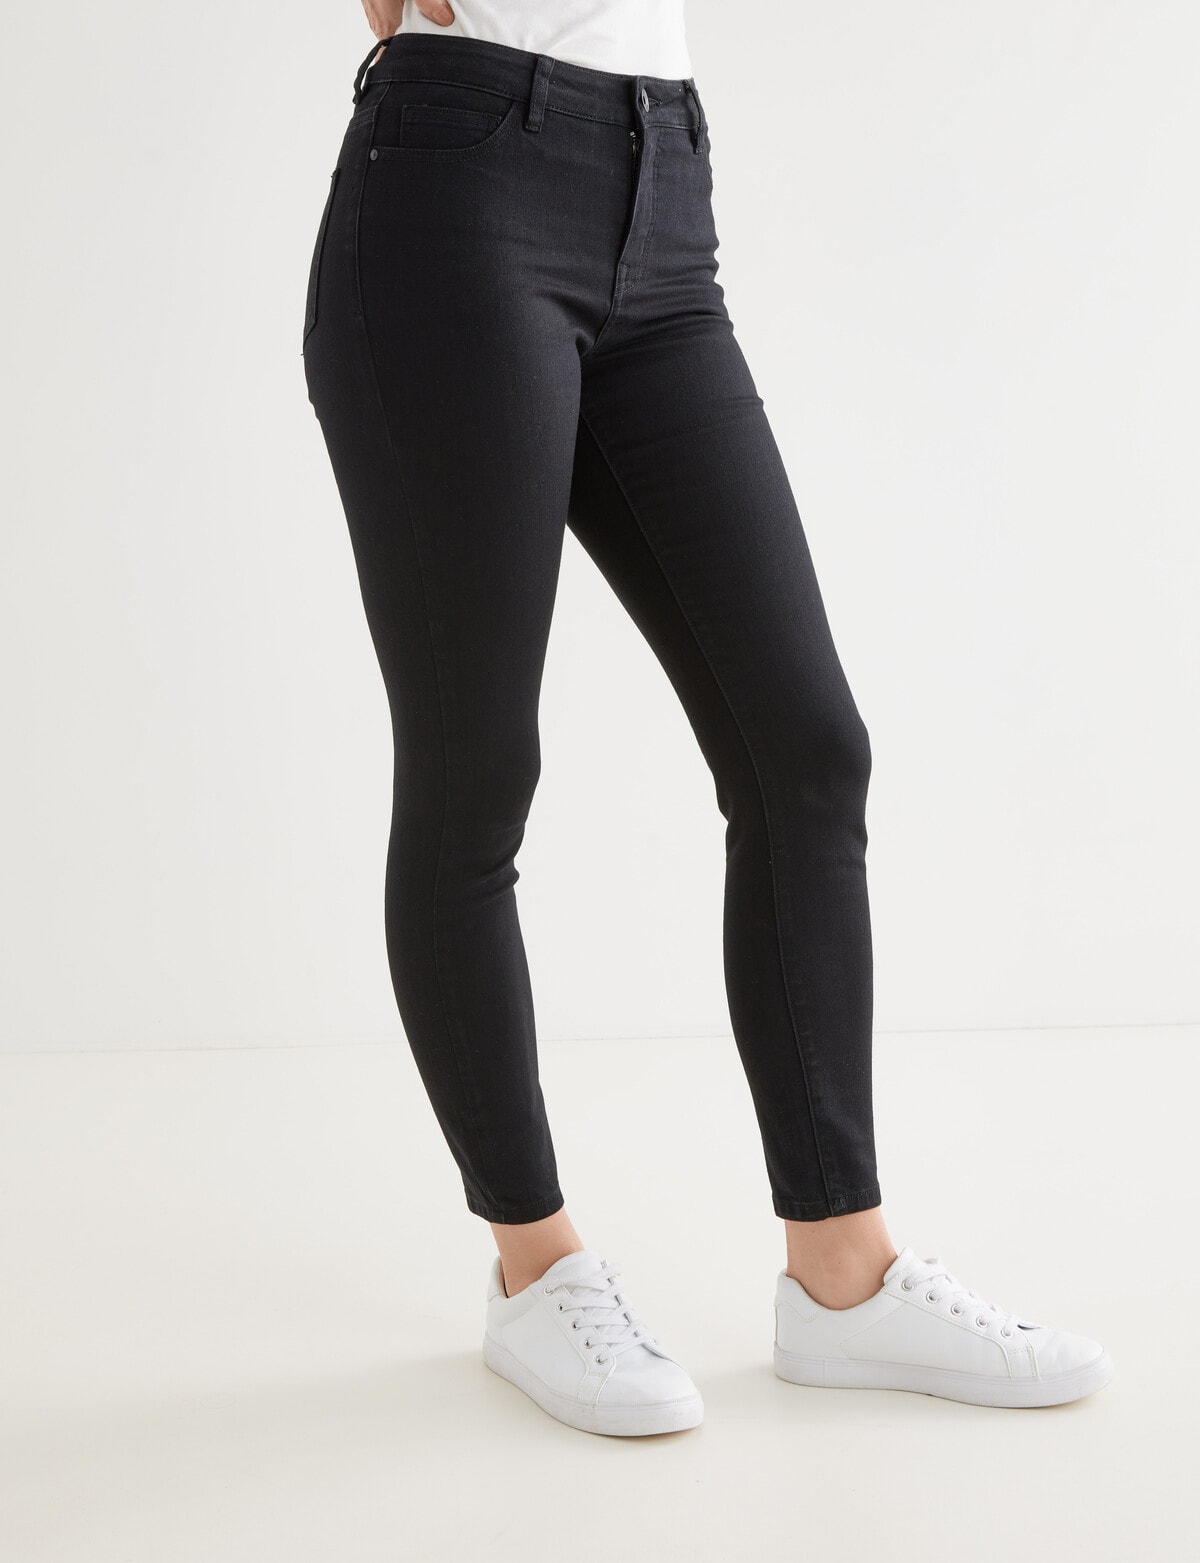 1826 Jeans BR- Republic Womens Plus Size Black Denim Jeans Stretch Slim Fit  Pants